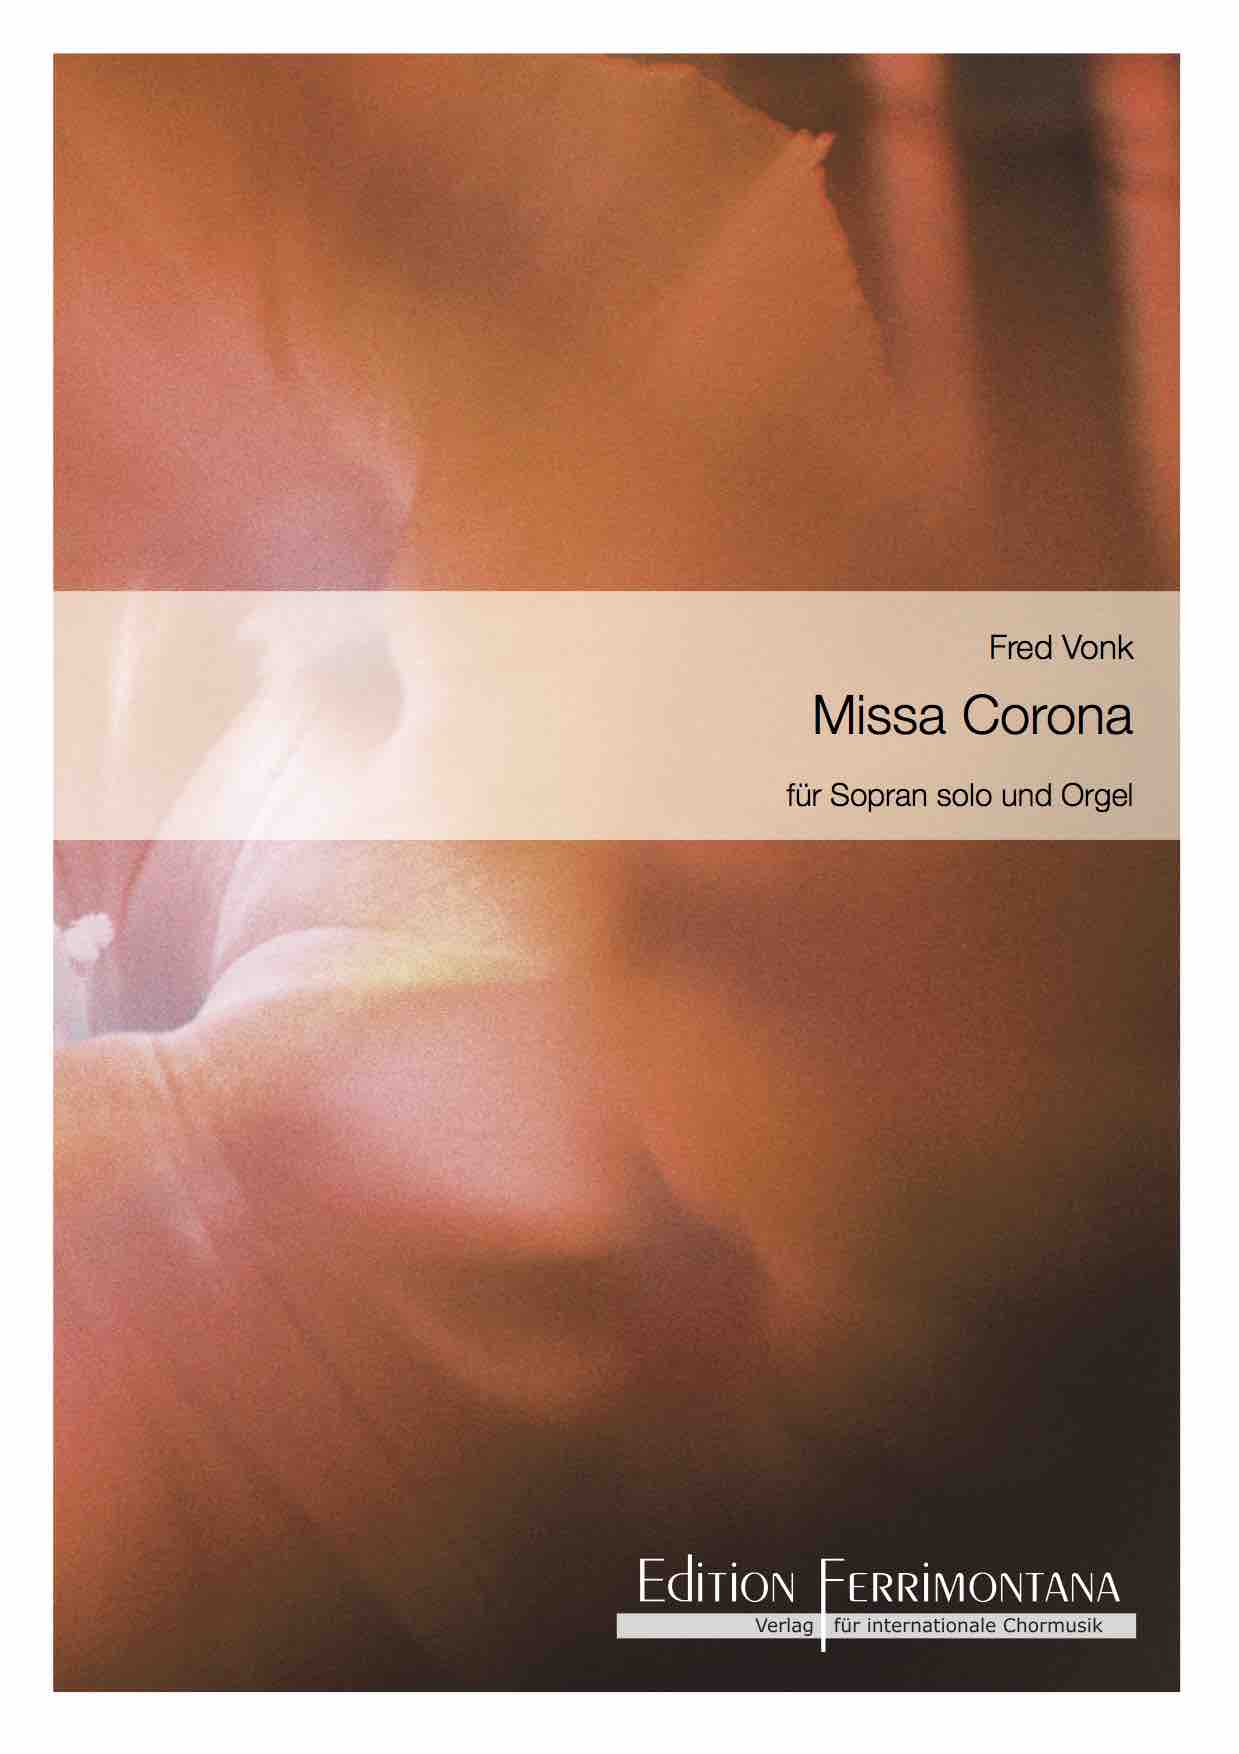 Vonk: Missa Corona für Sopran solo und Orgel